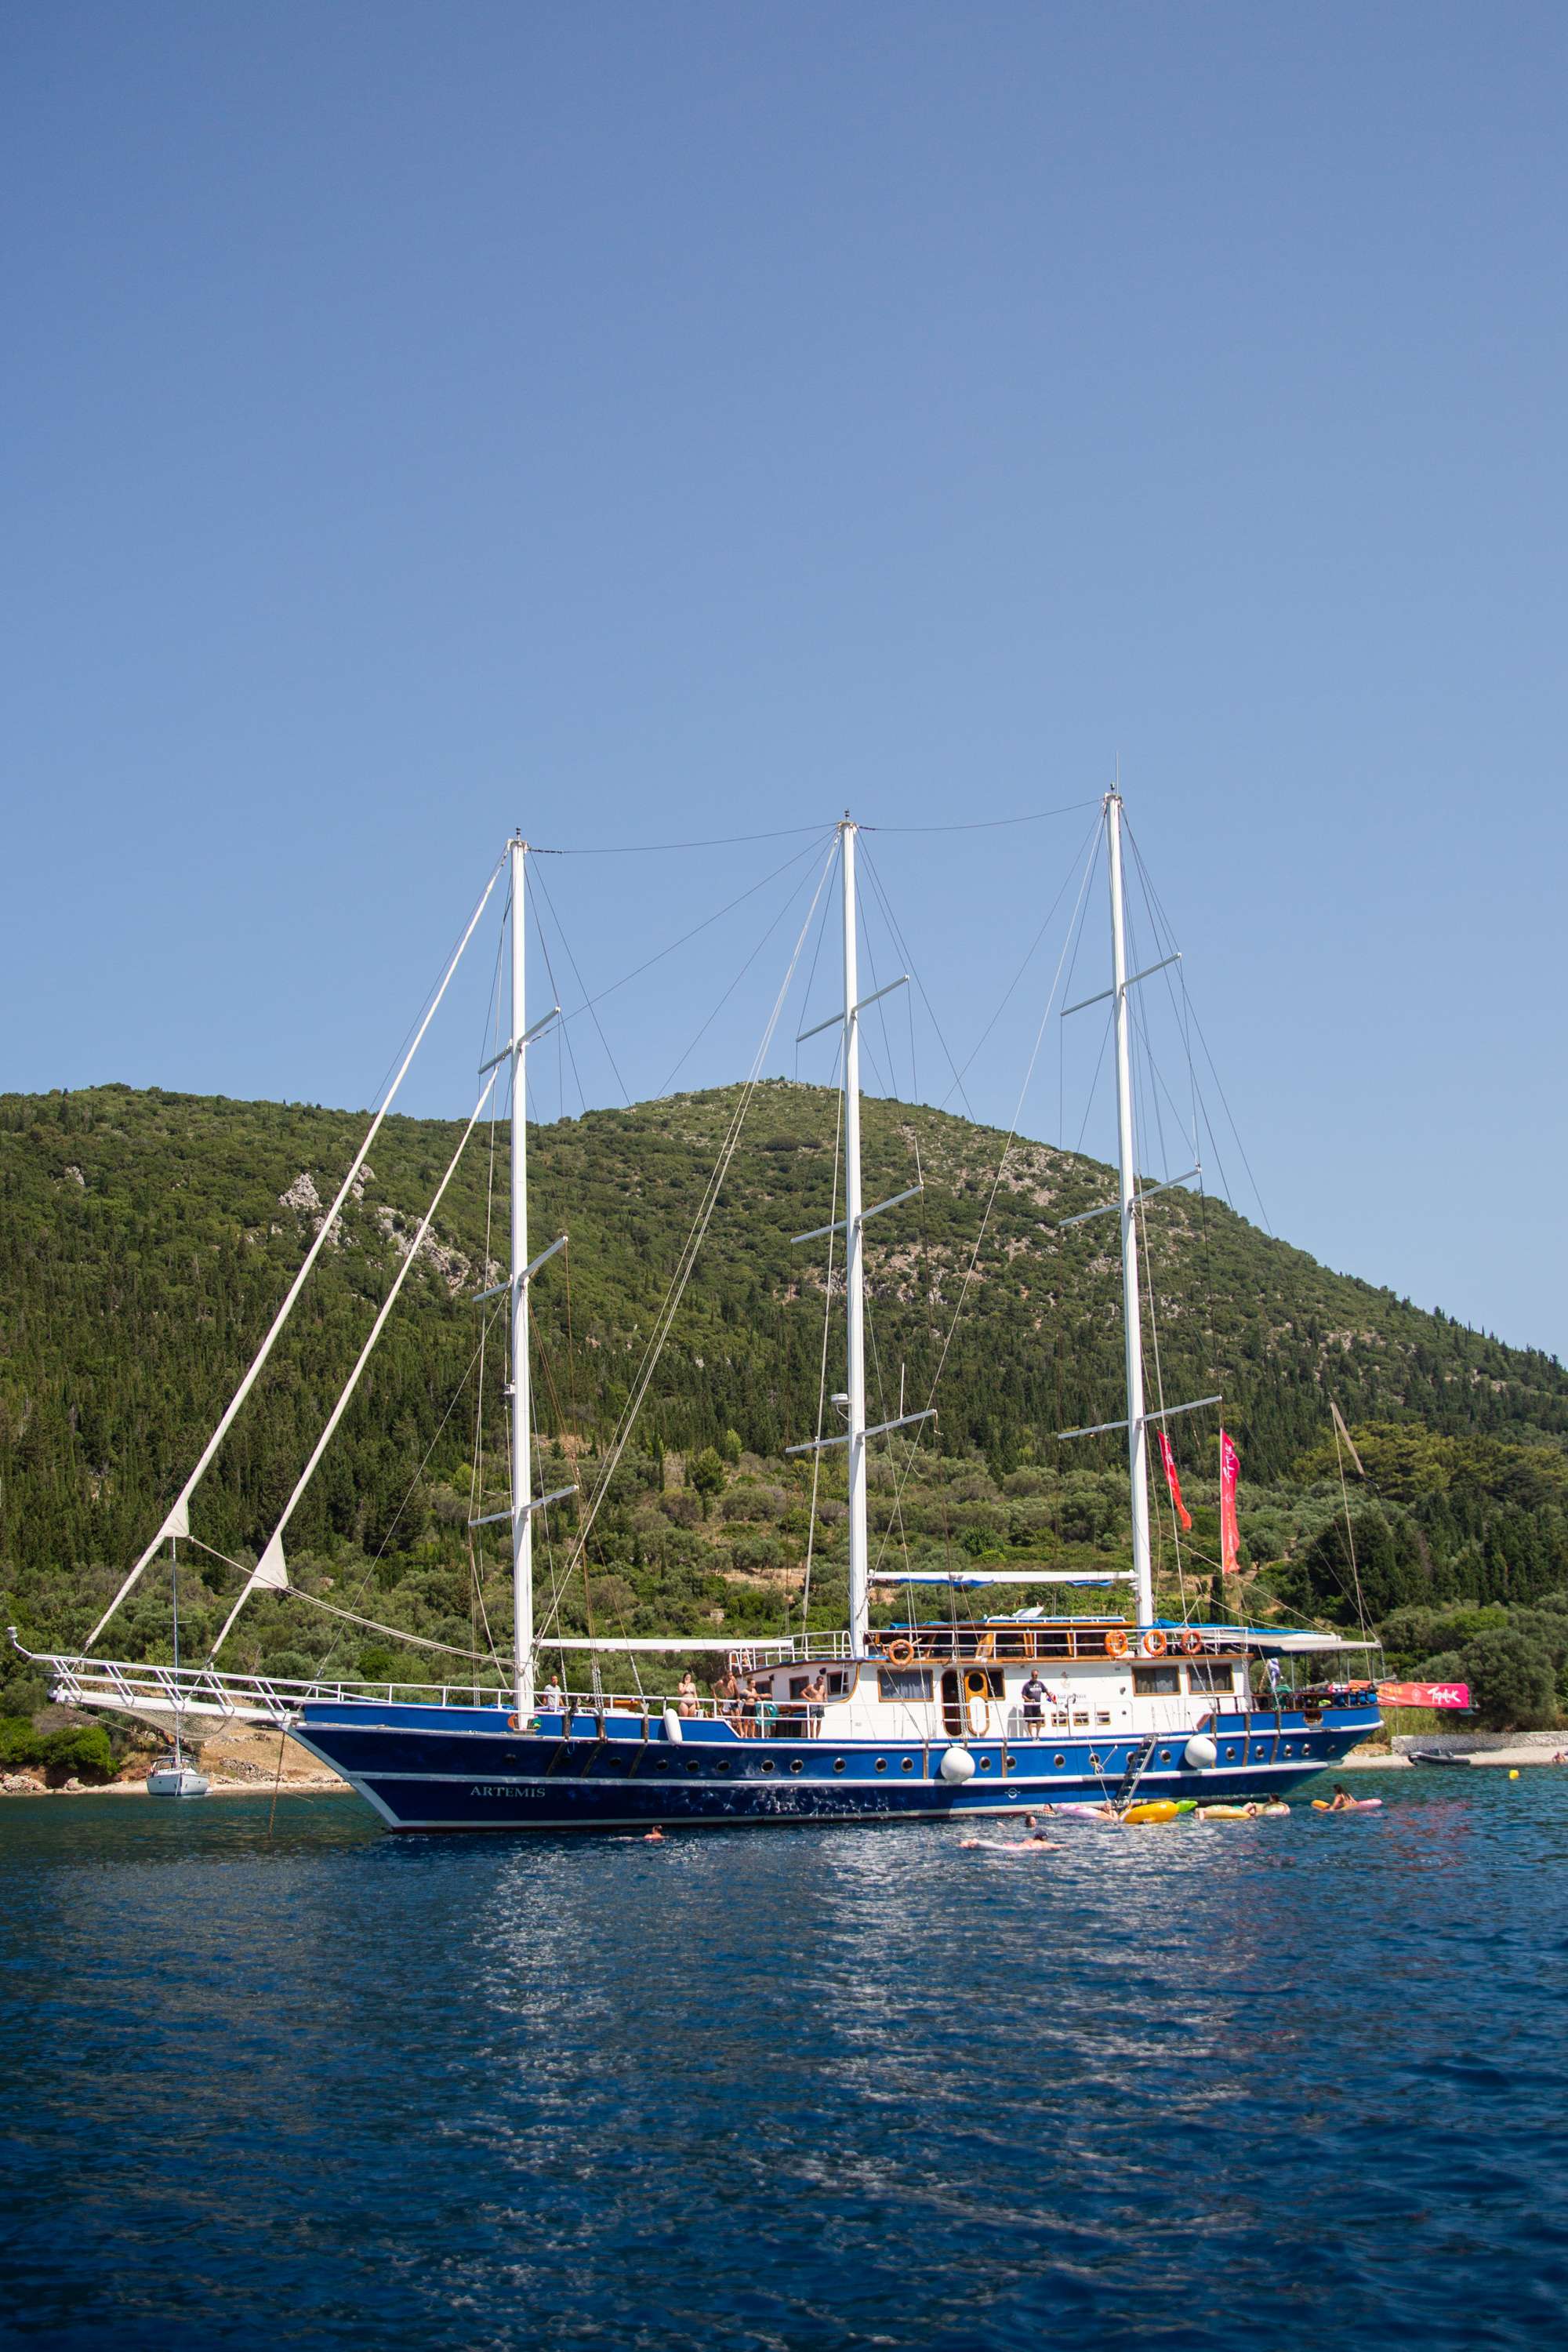 artemis - Yacht Charter Porto Koufo & Boat hire in Greece 1